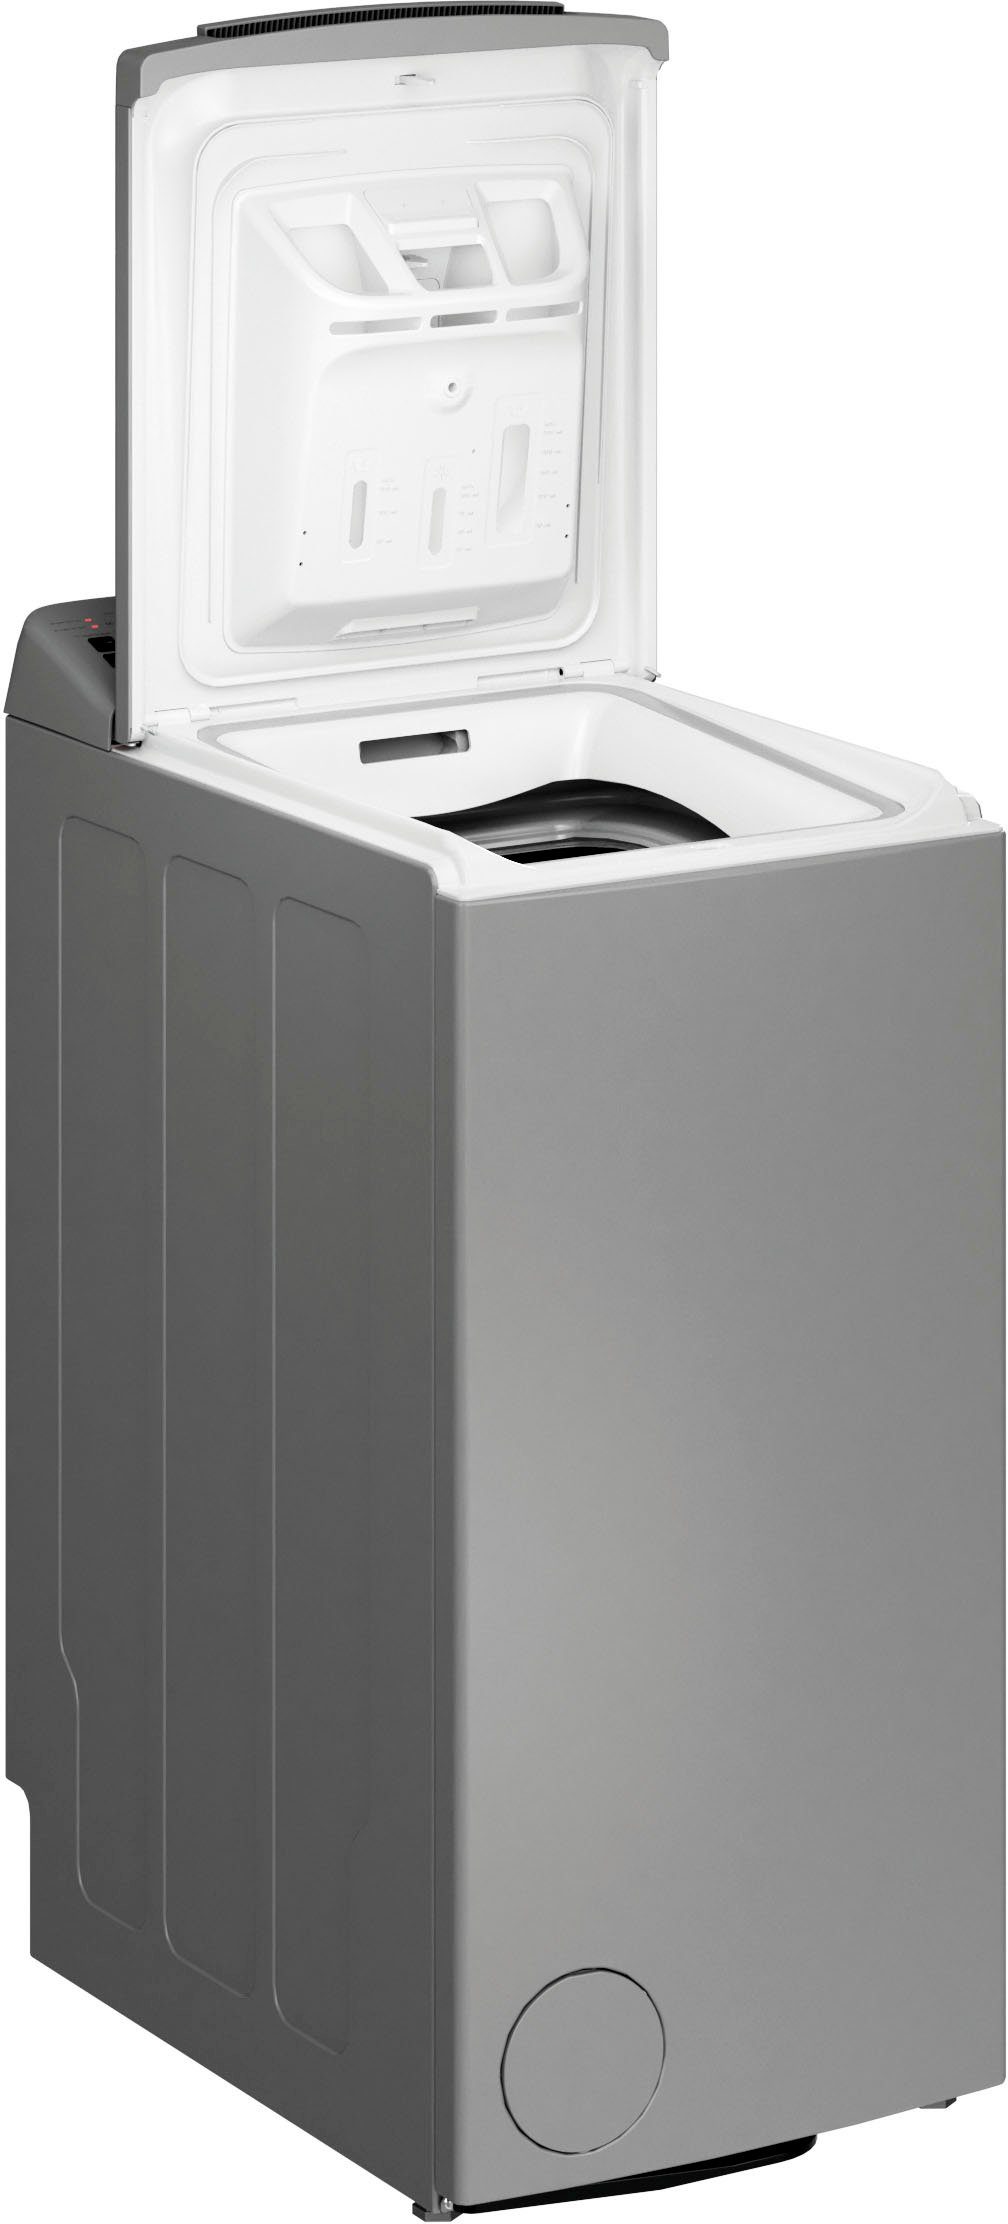 BAUKNECHT Waschmaschine Toplader WMT SILVER 7 BD N, 7 kg, 1000 U/min,  SoftOpening, Vollwasserschutz, Fahrbar dank Rolle, Kindersicherung